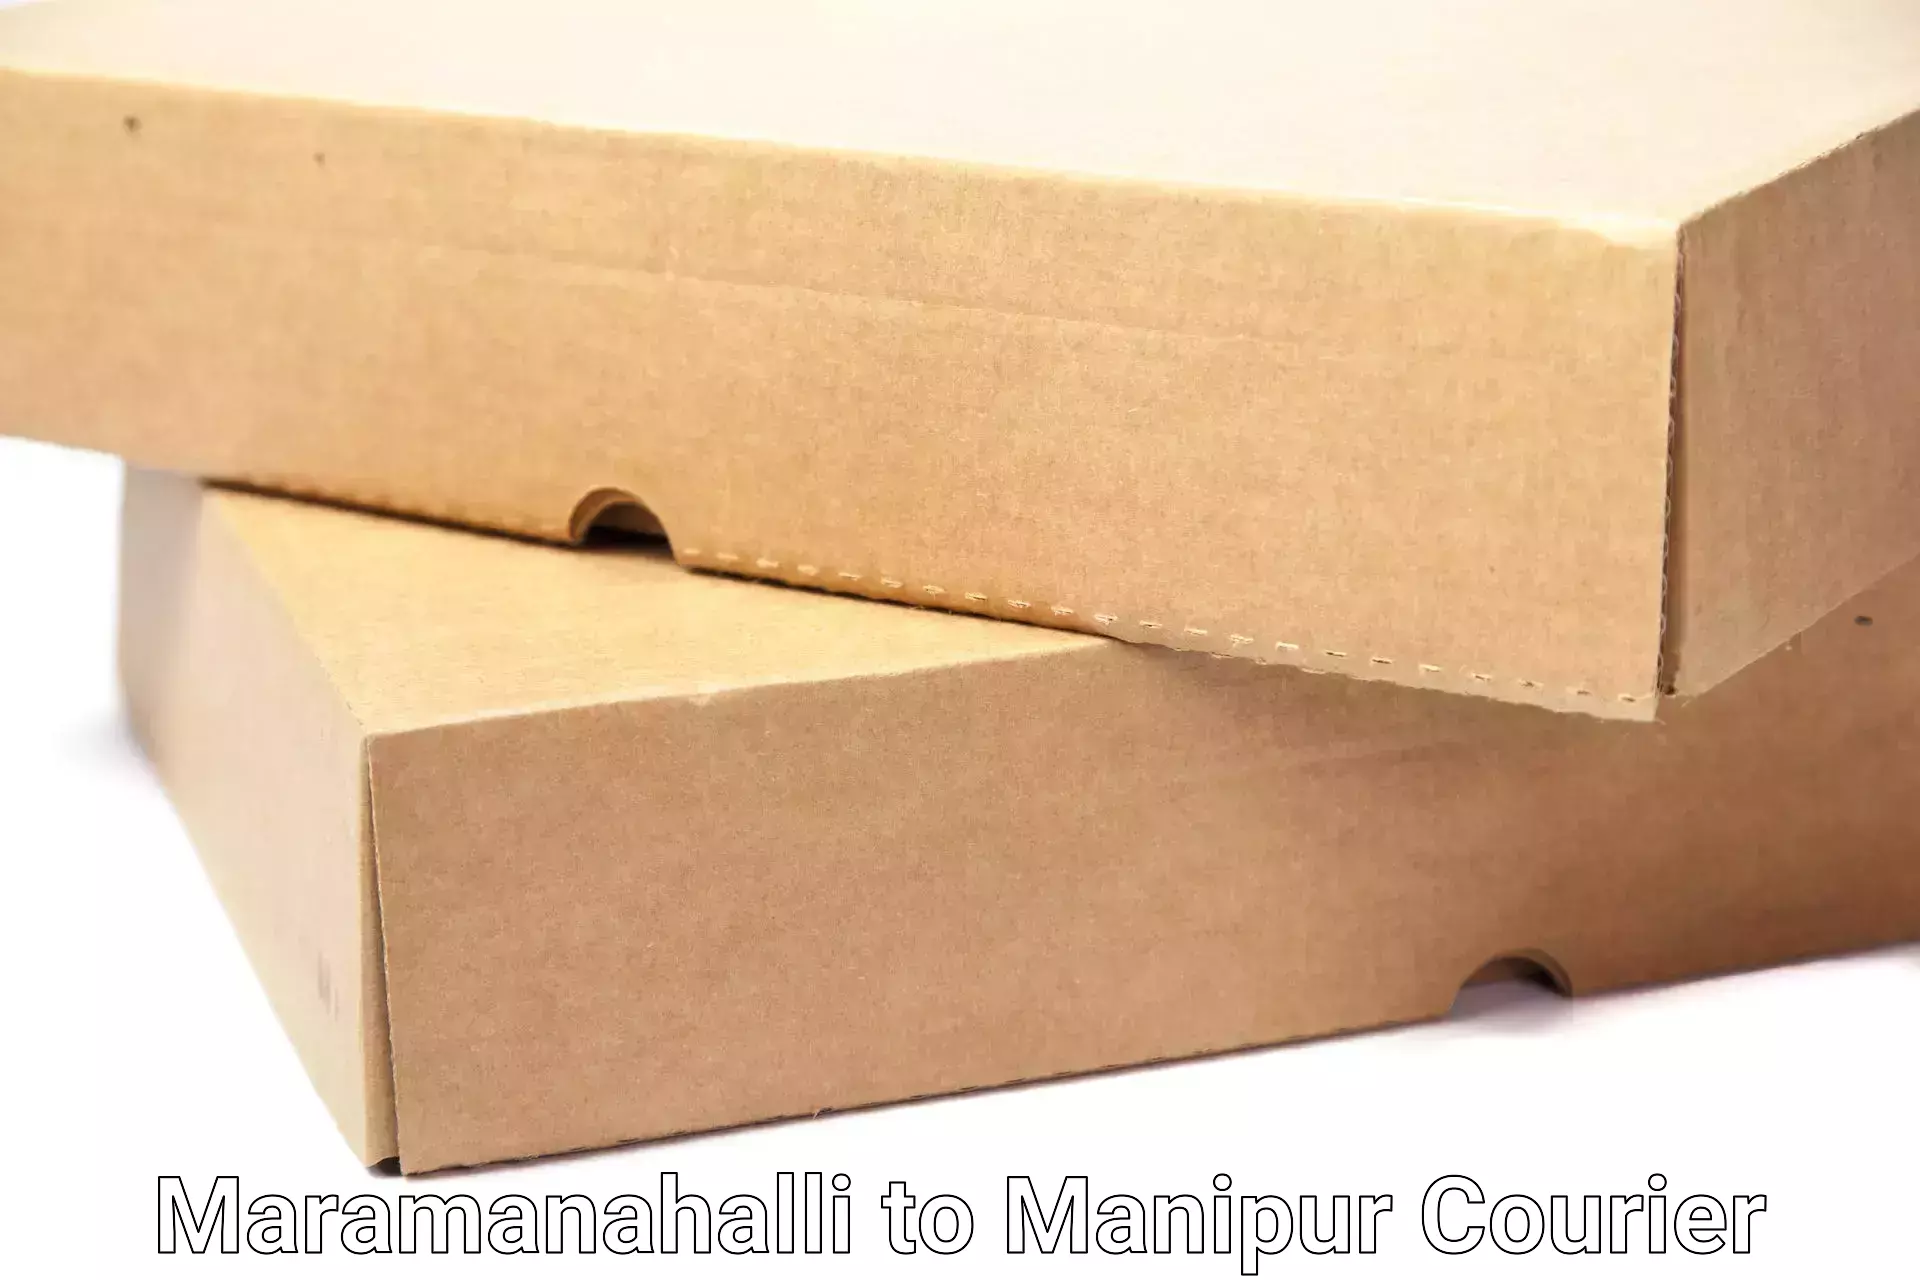 Skilled movers Maramanahalli to Ukhrul